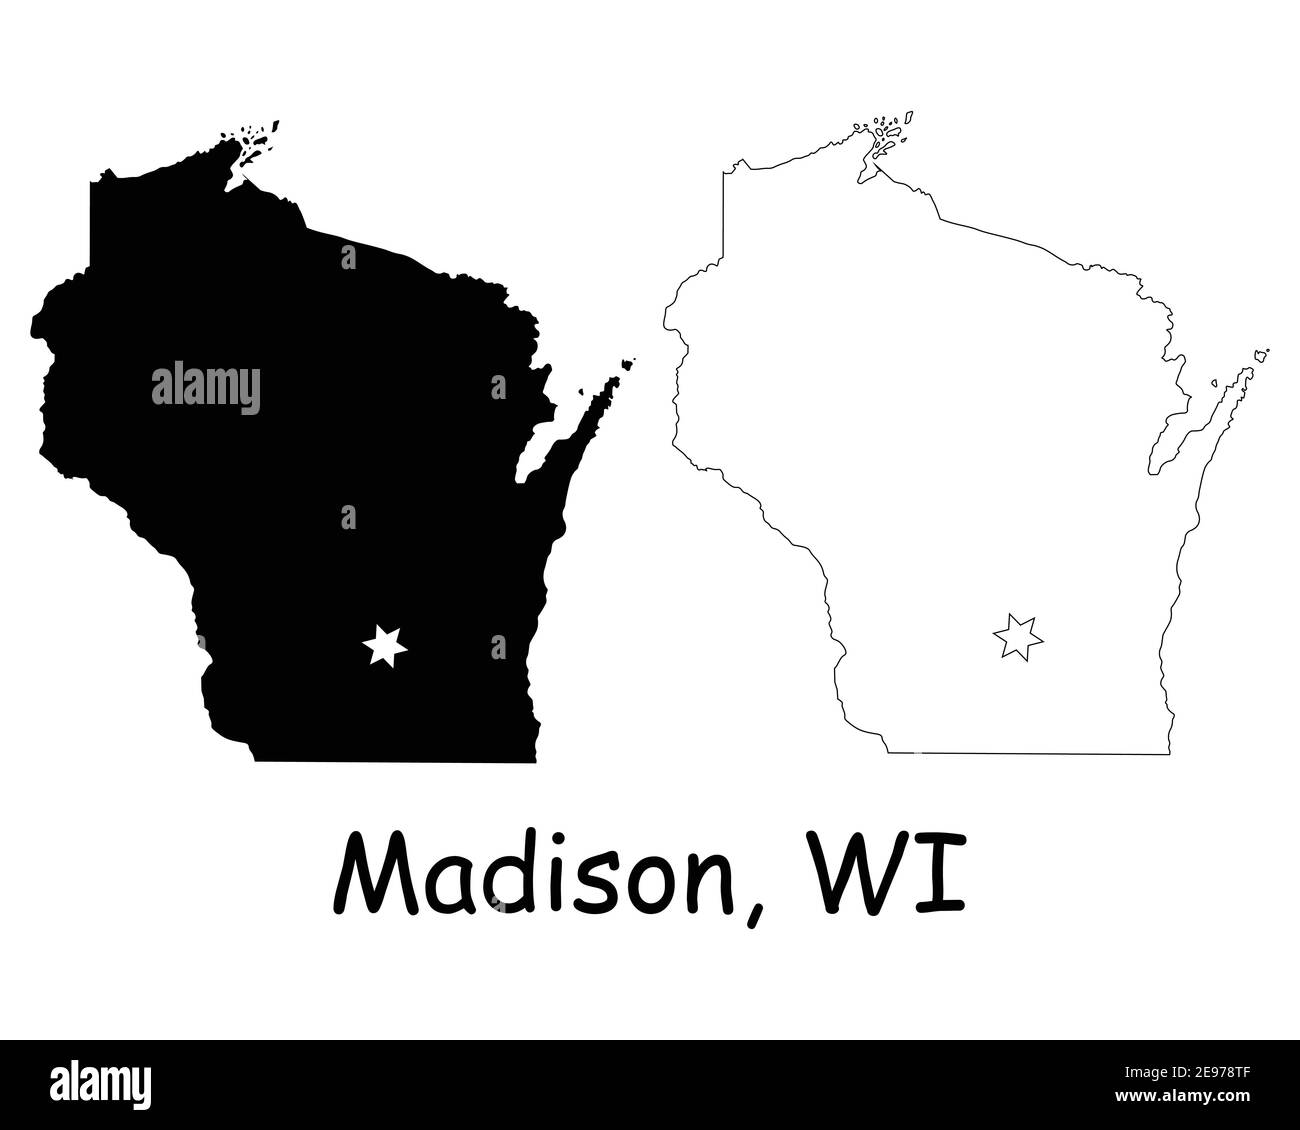 Wisconsin WI State Map USA mit Capital City Star in Madison. Schwarze Silhouette und umreißen isolierte Karten auf weißem Hintergrund. EPS-Vektor Stock Vektor